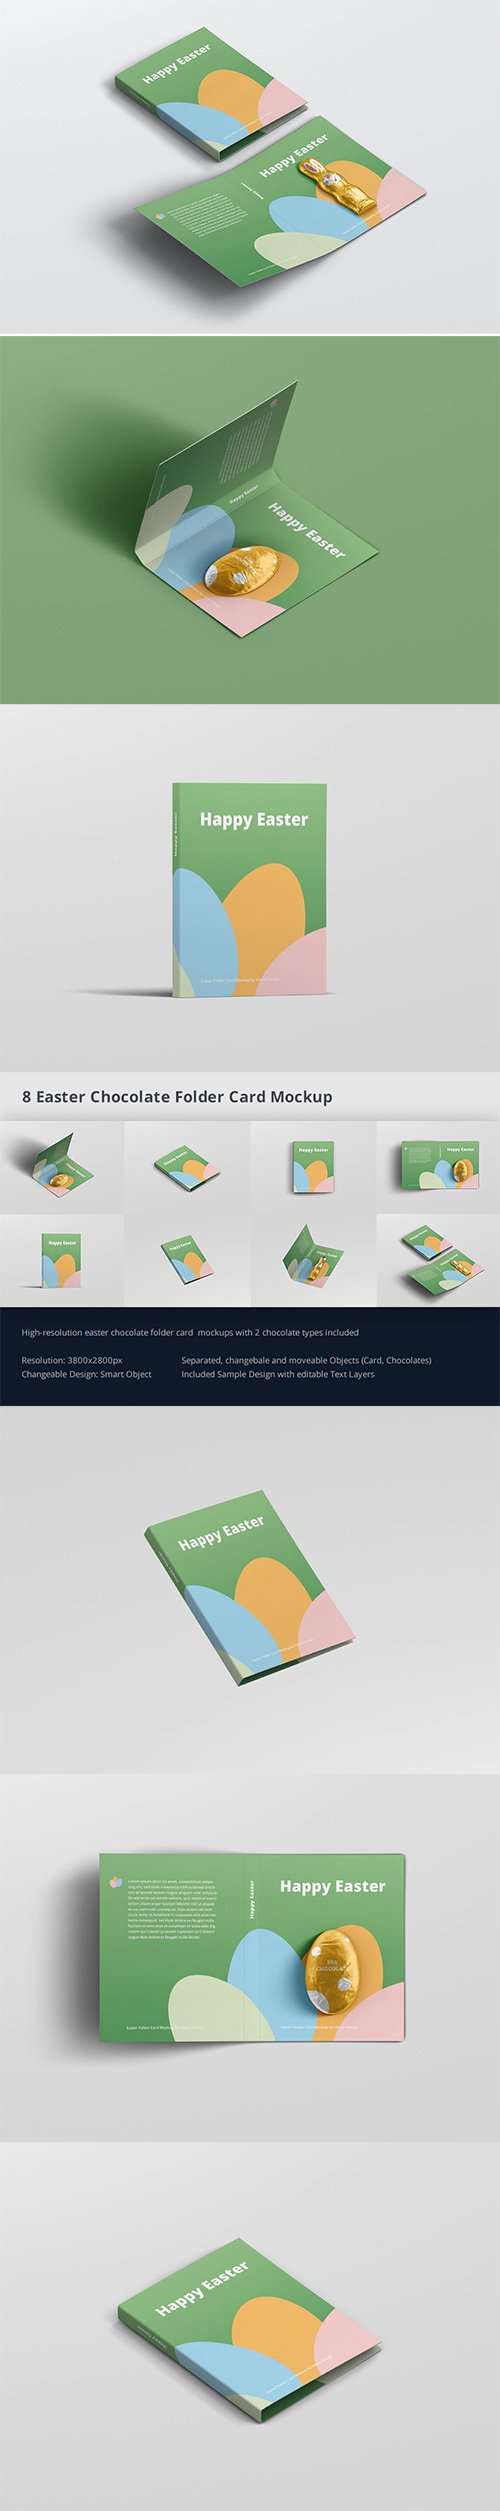 Easter Folder Card Mockup PSD